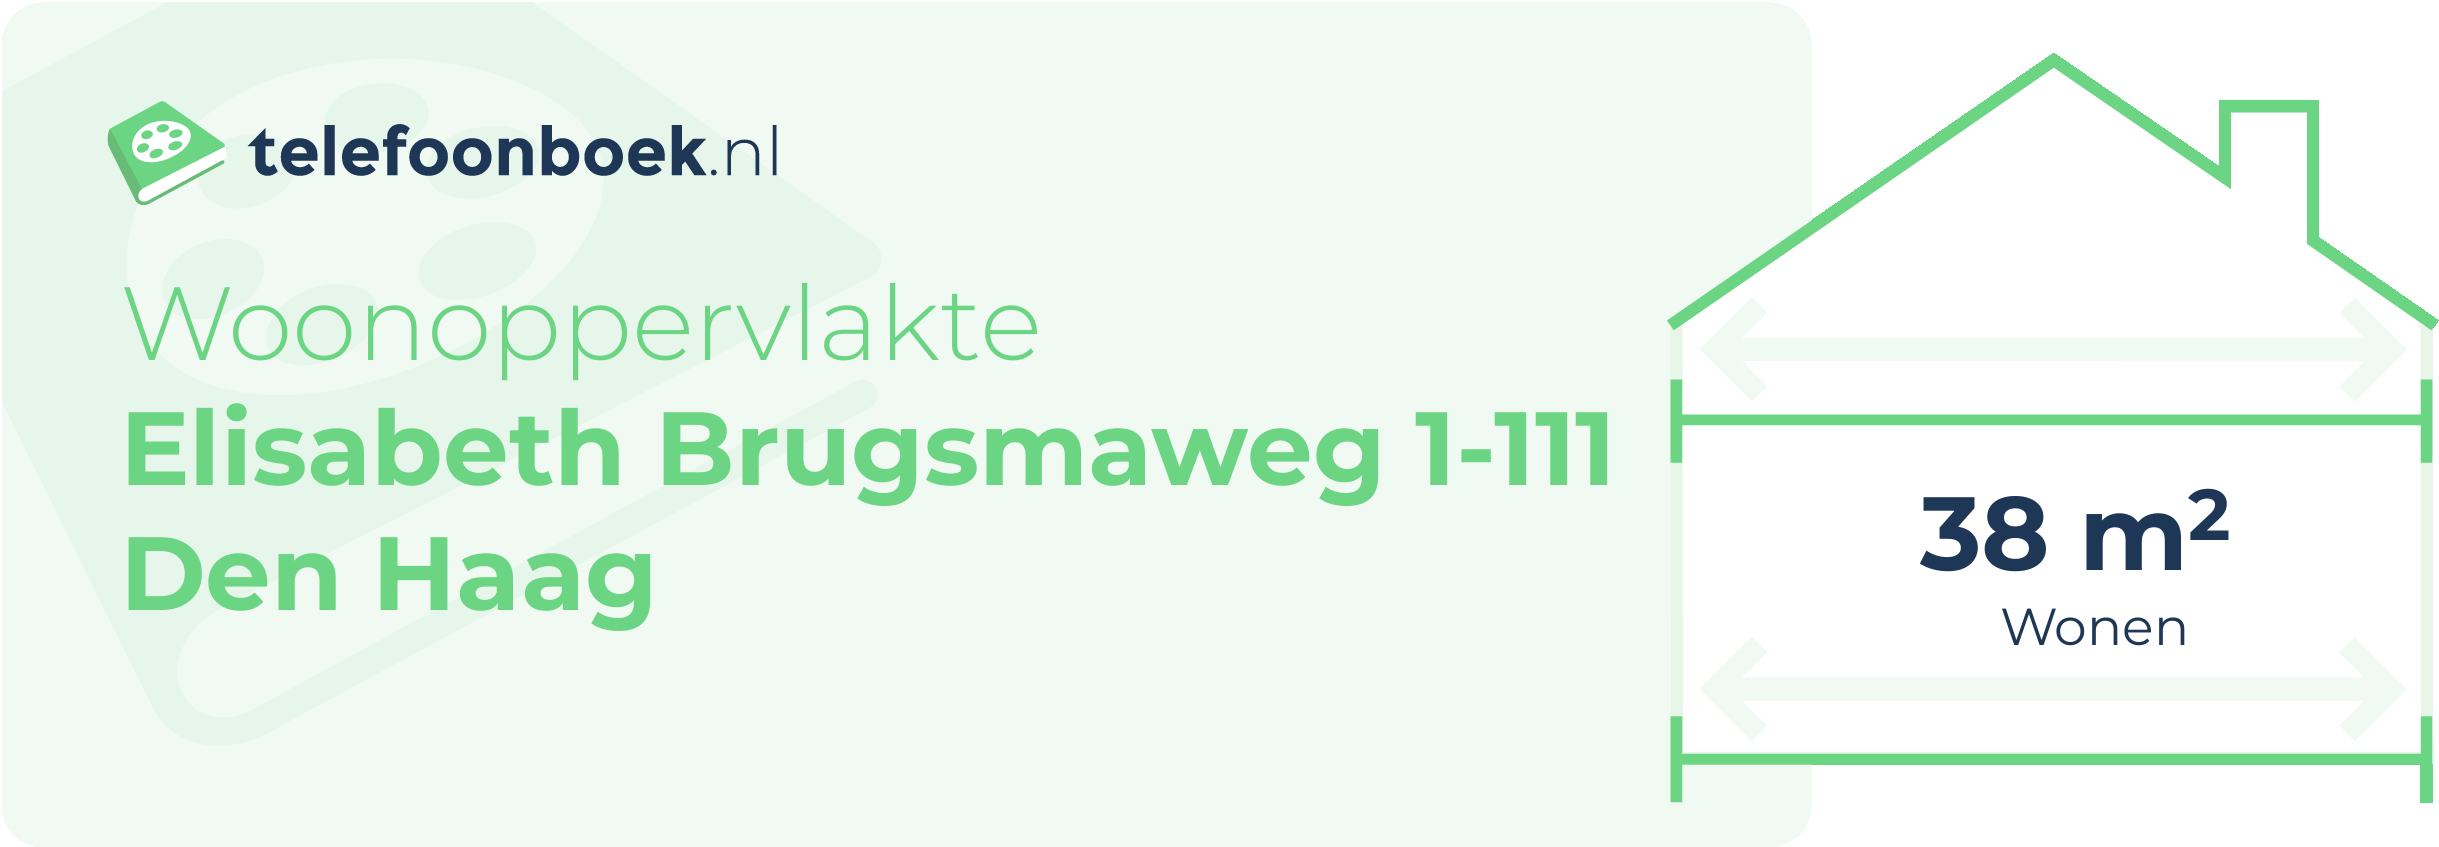 Woonoppervlakte Elisabeth Brugsmaweg 1-111 Den Haag